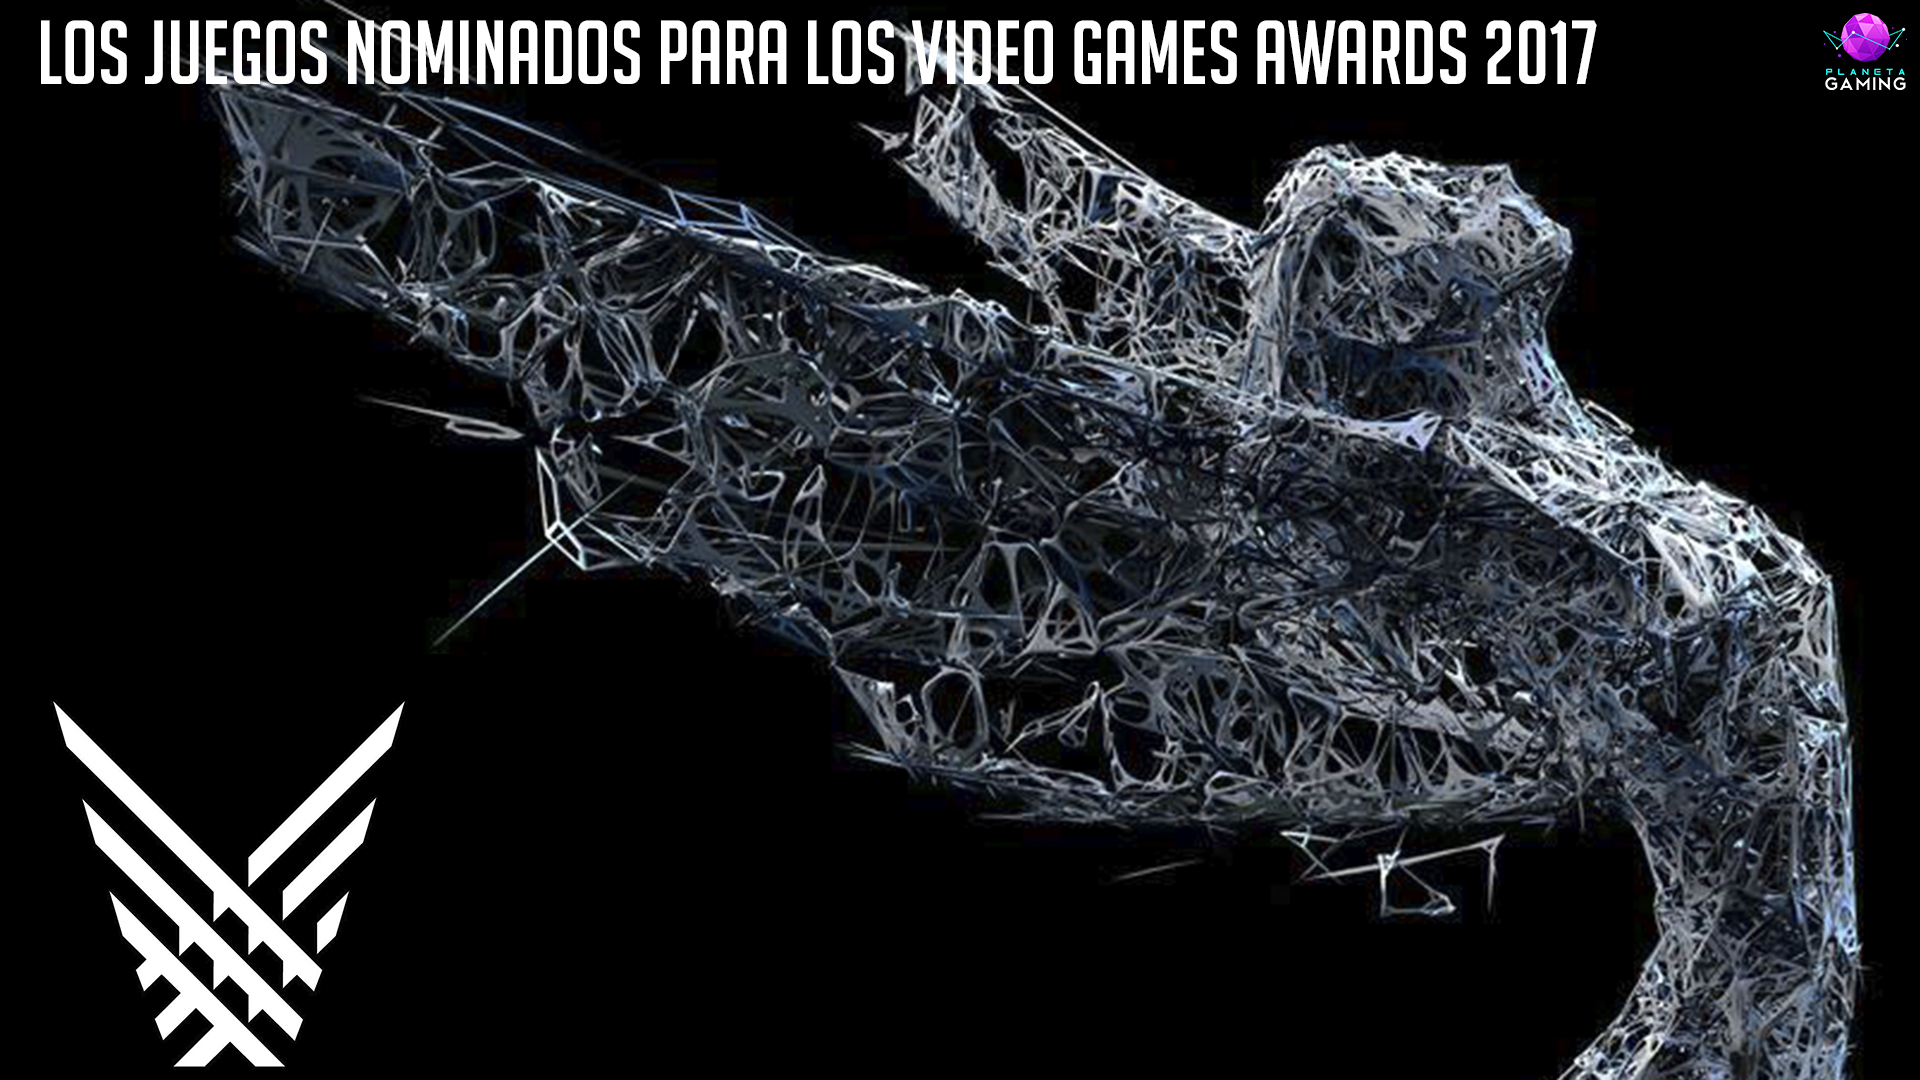 Los juegos nominados para los Games Awards 2017